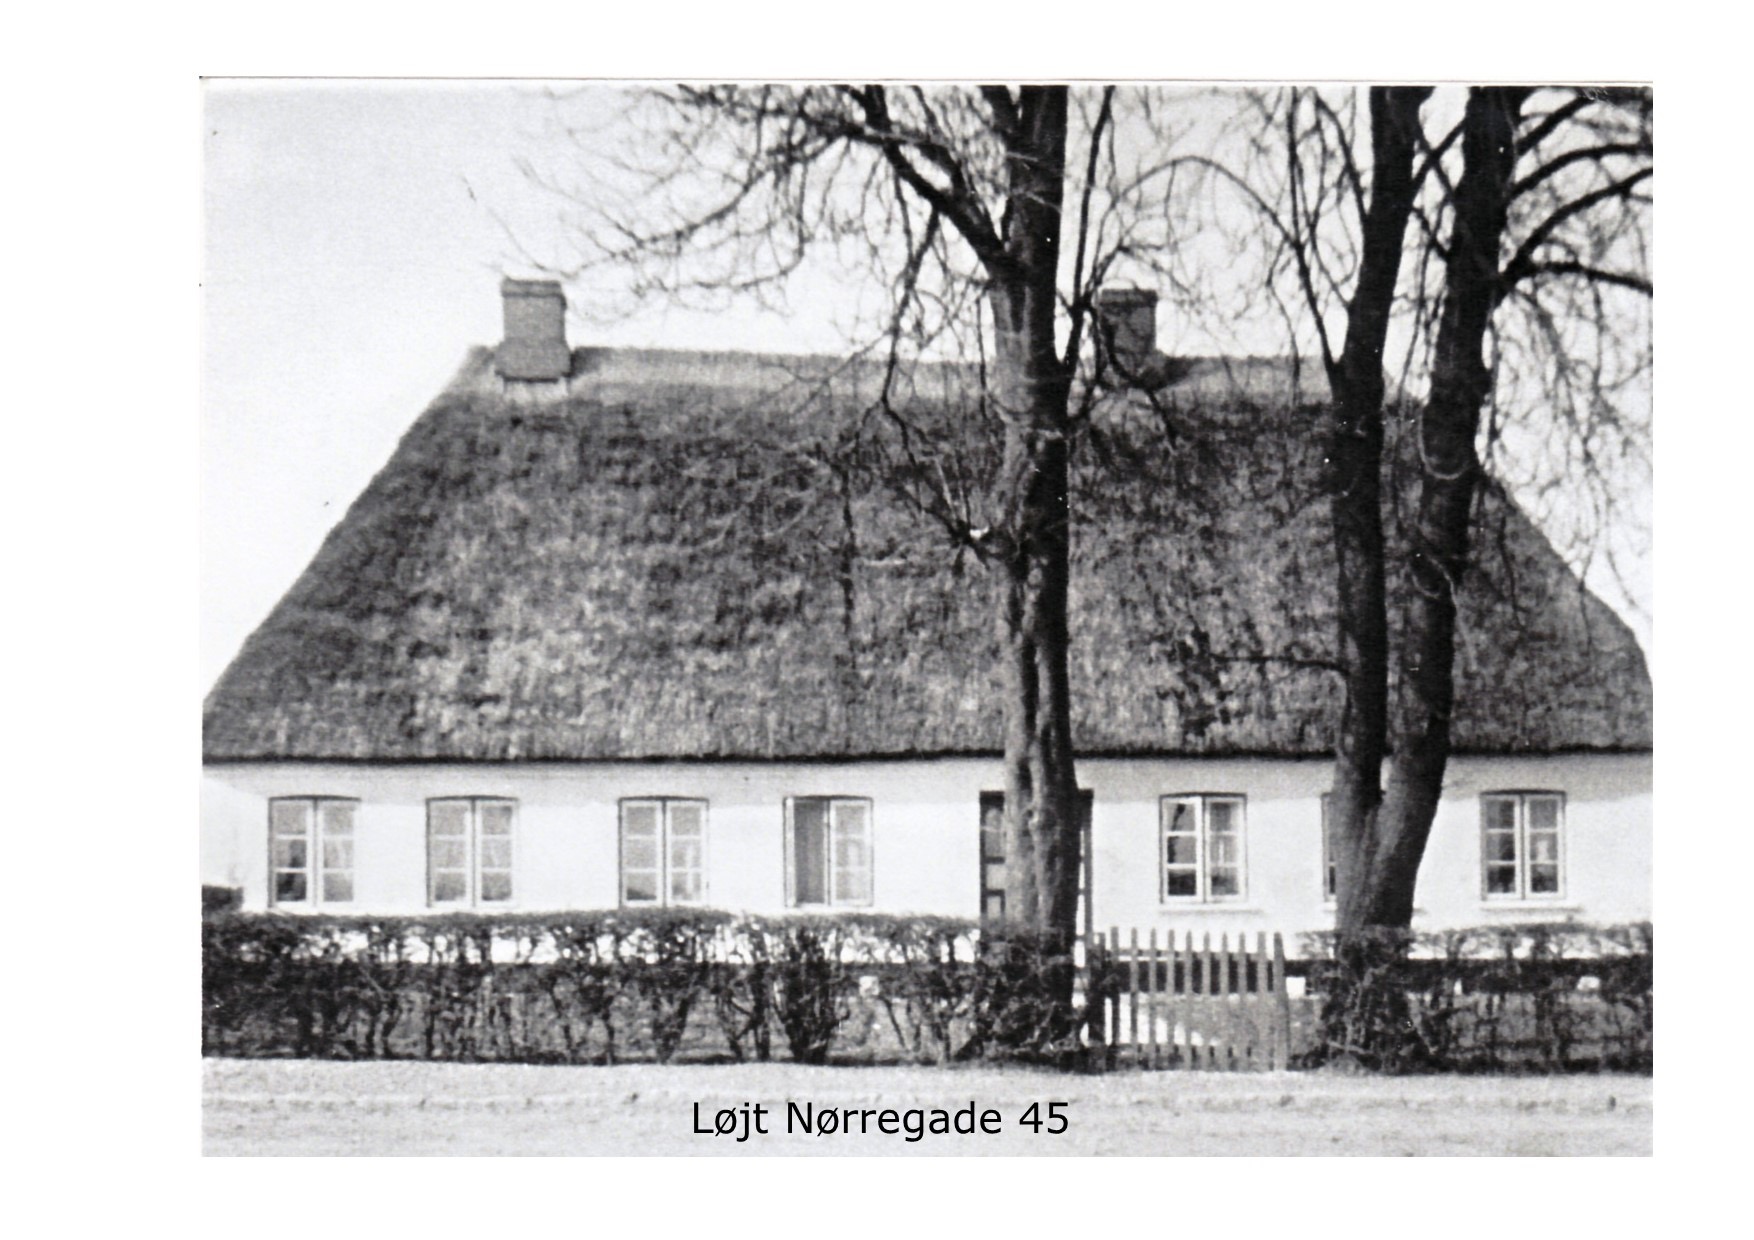 Nørregade 45 